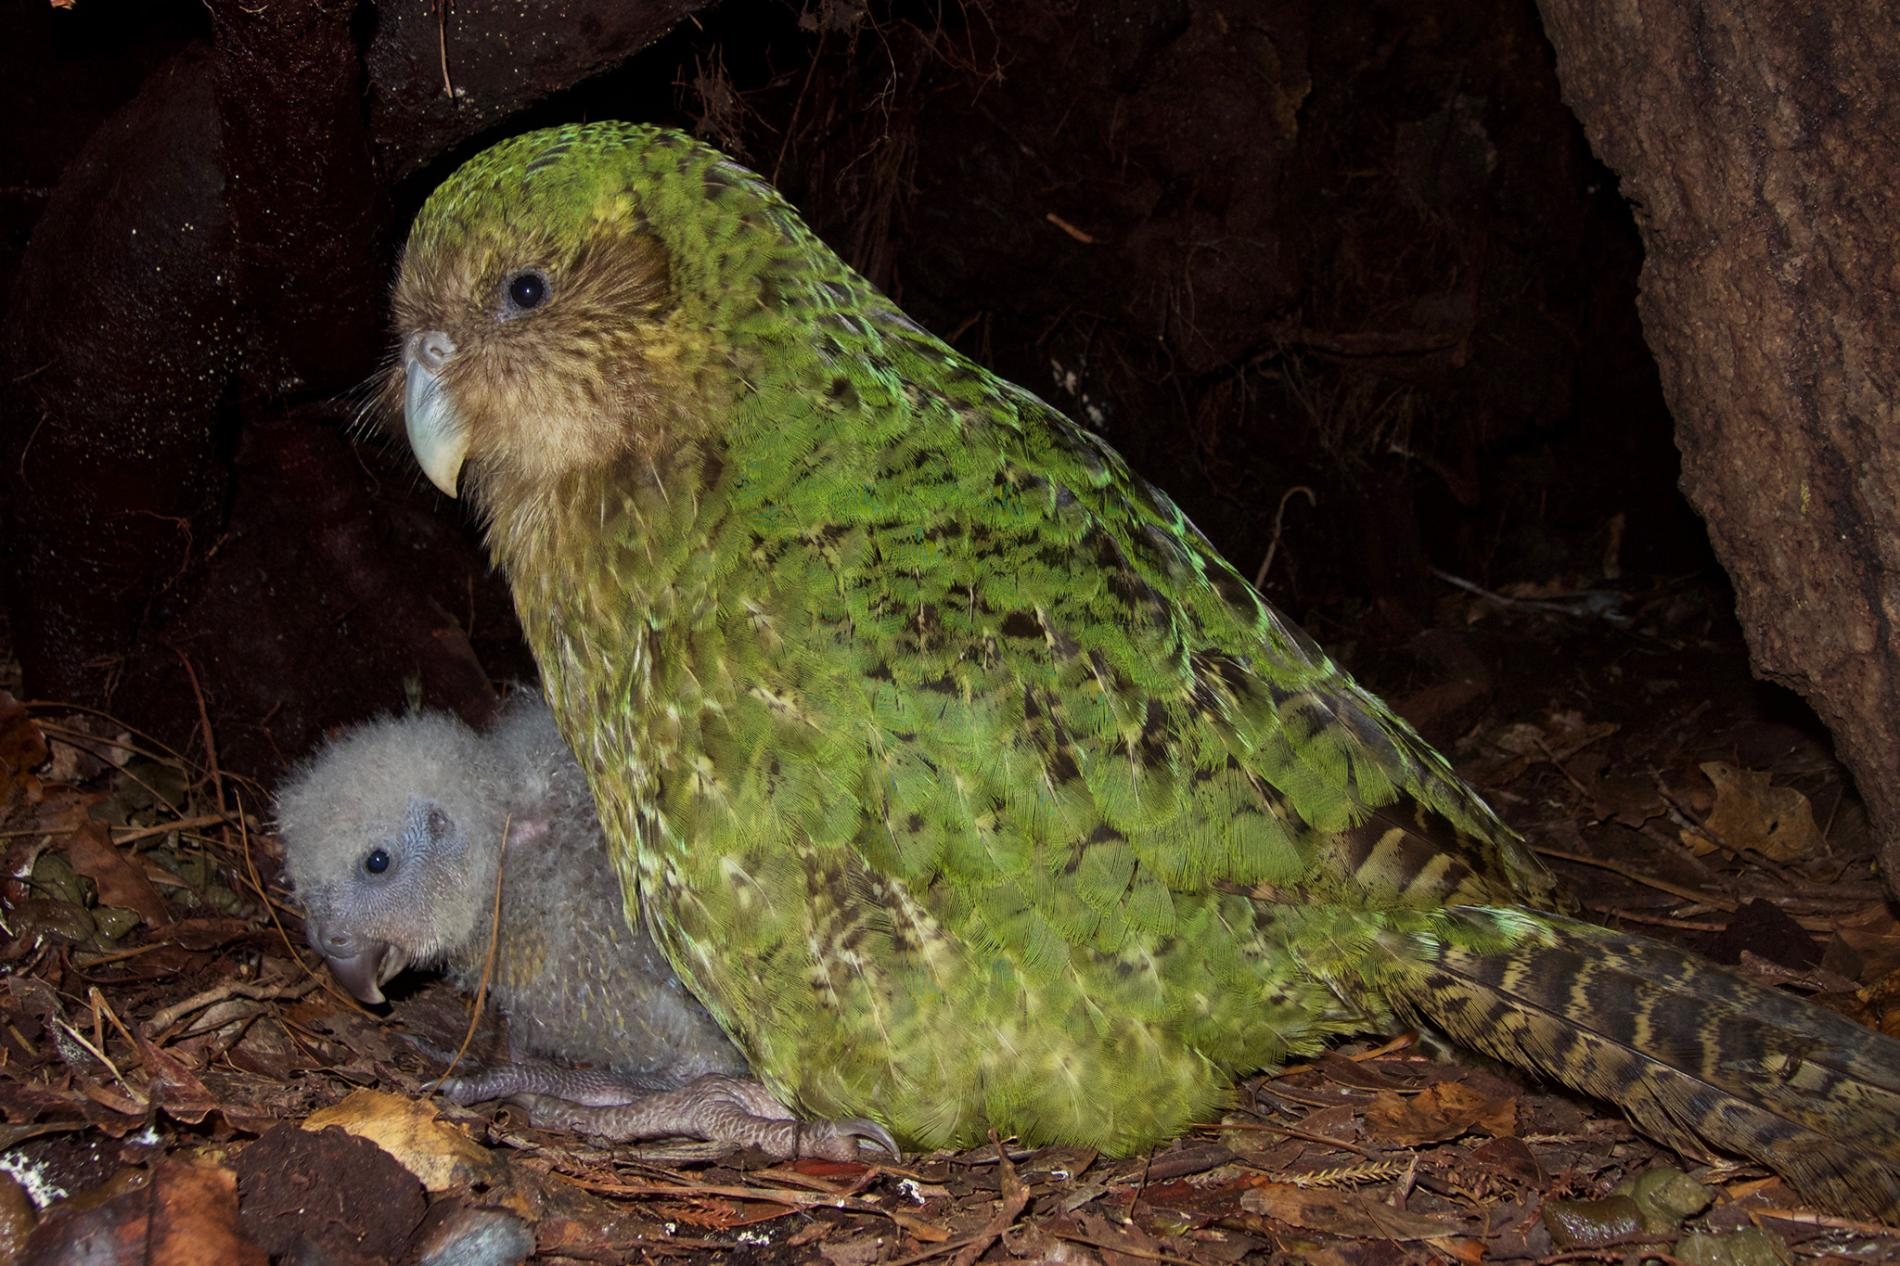 在紐西蘭科德菲什島（Codfish island，毛利語為Whenua Hou），一隻雌性鴞鸚鵡與牠的幼鳥坐在一起。這些特別的鸚鵡是無法飛行的夜行性動物，而且處於極危狀態（critically endangered），全世界僅存147隻成鳥。 PHOTOGRAPH BY ANDREW DIGBY